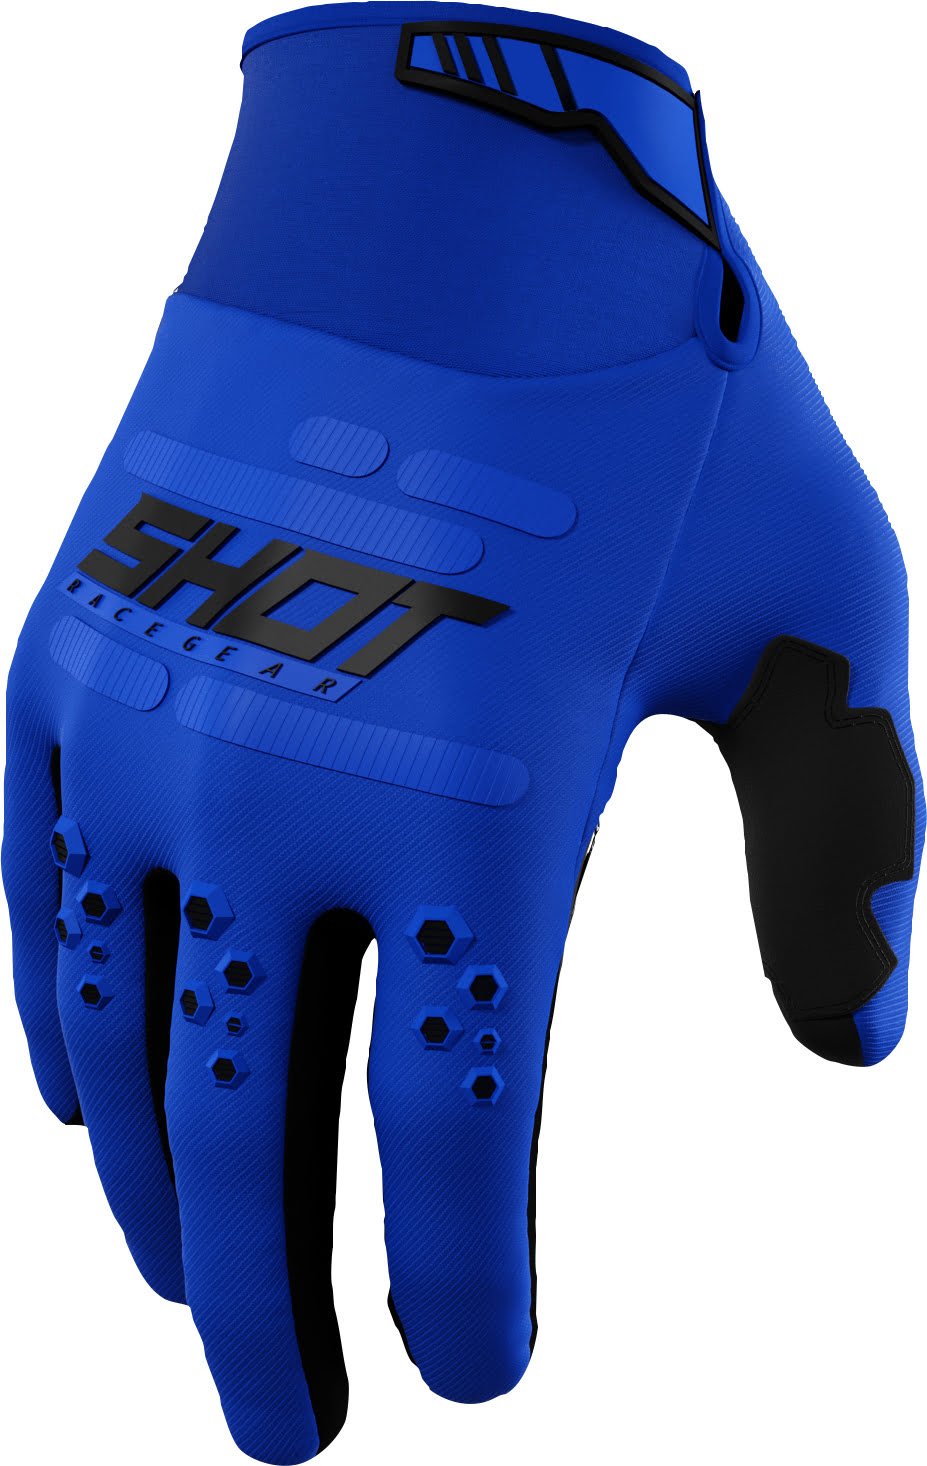 Gloves VISION Blue SHOT 